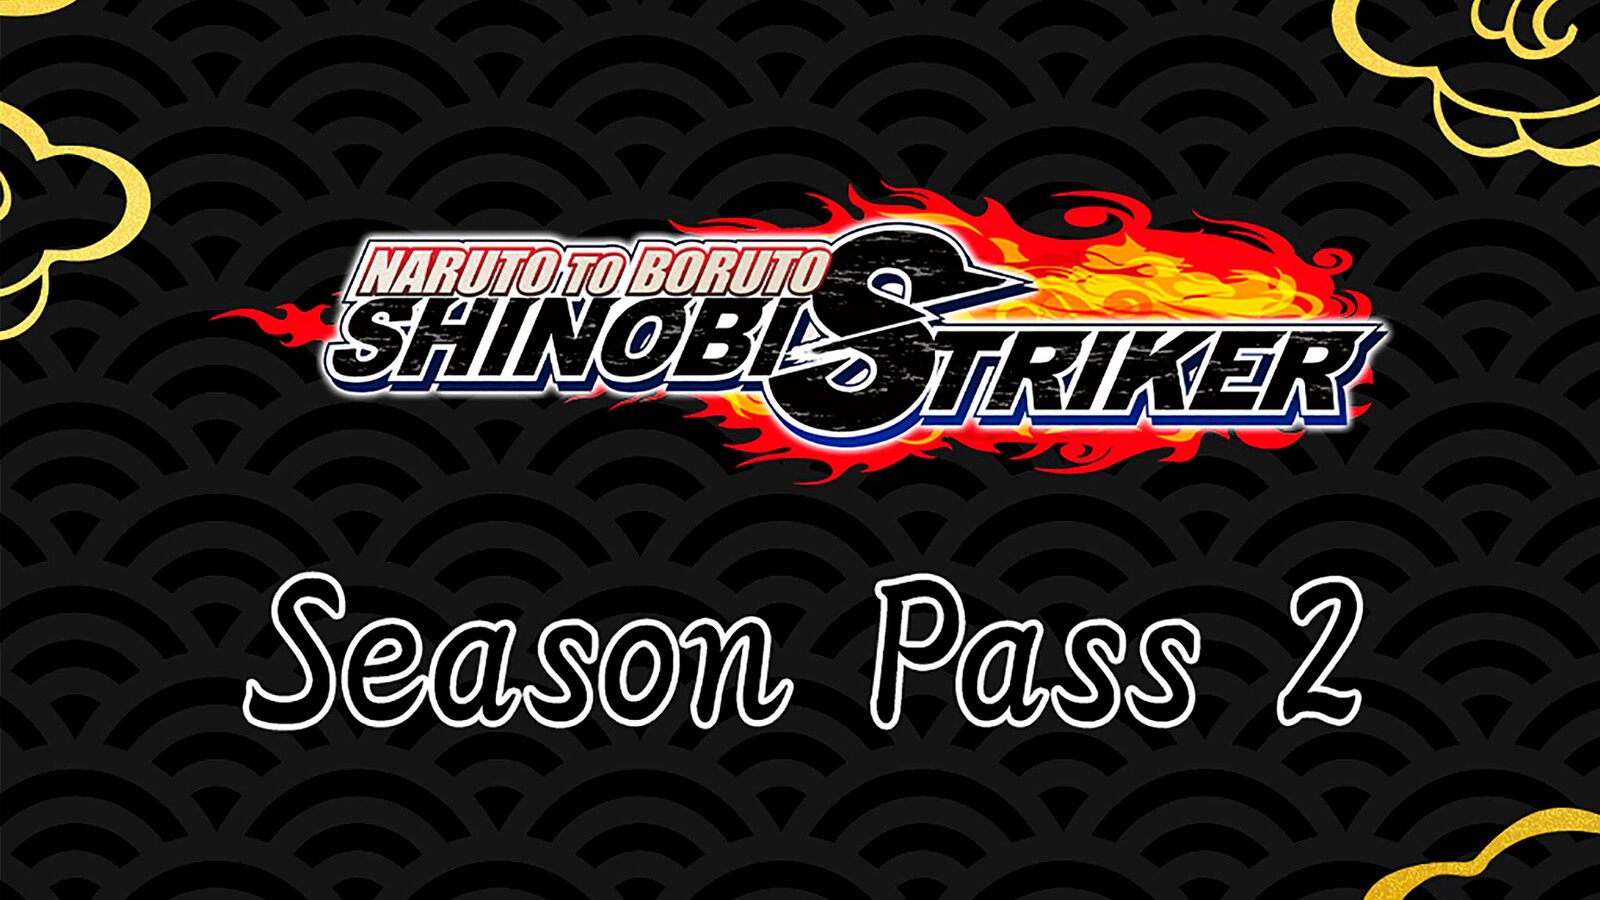 Naruto To Boruto: Shinobi Striker - Season Pass 2